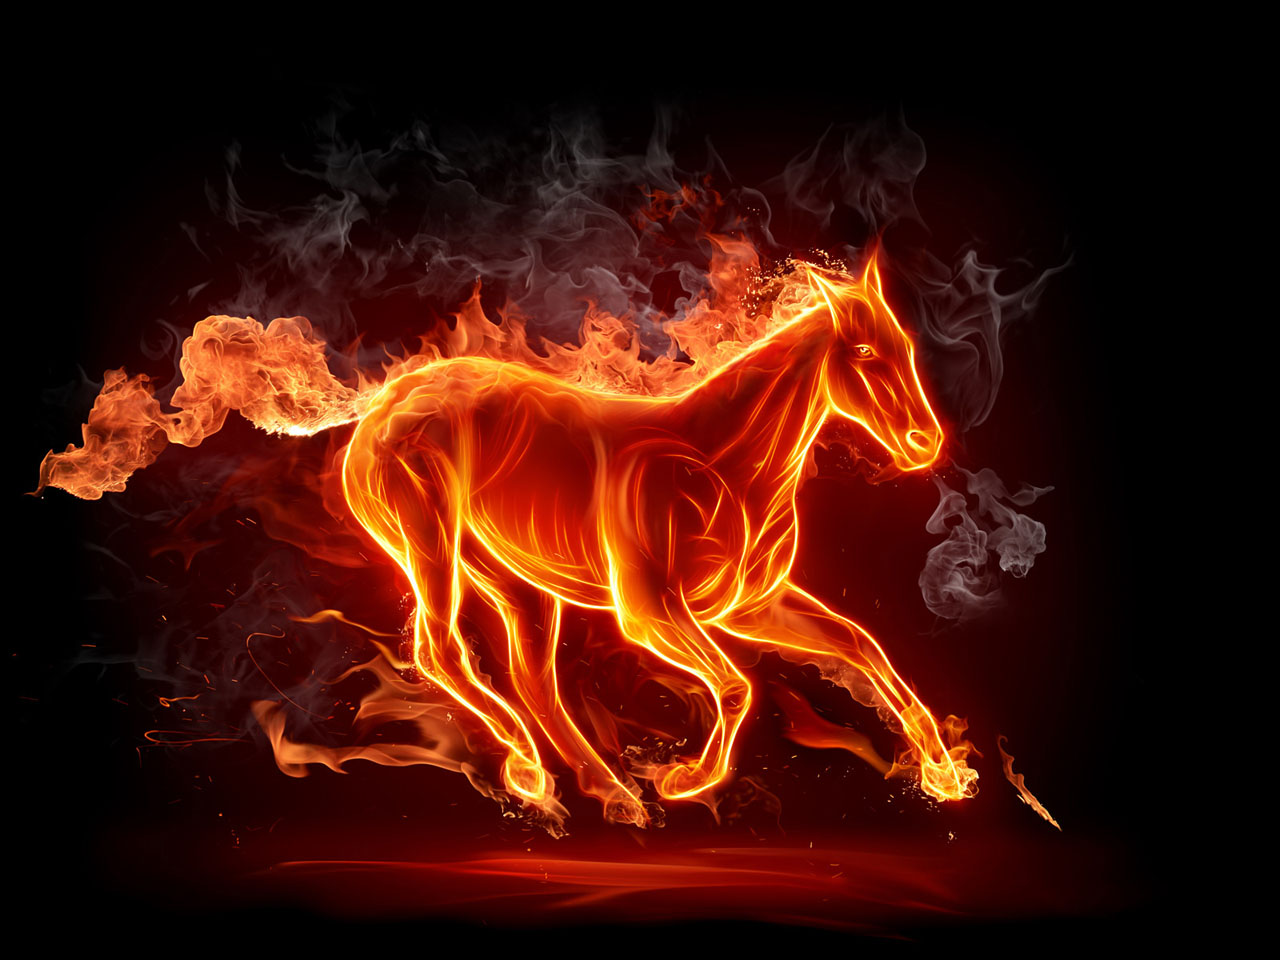 1280x960_fire-horse-wallpaper.jpg